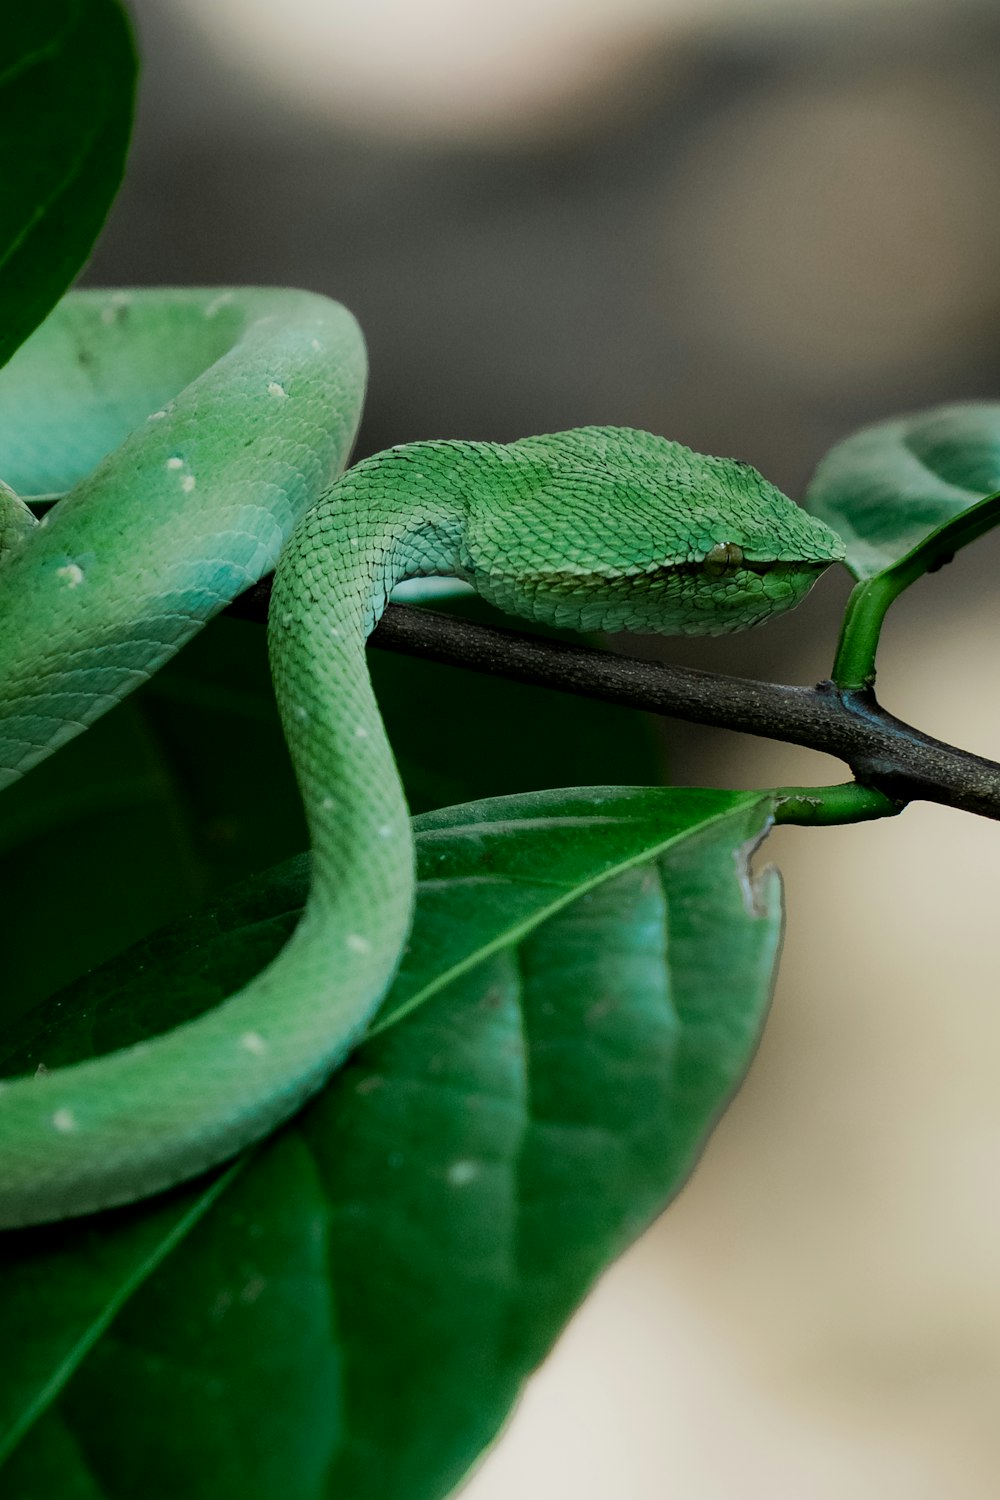 Eine grüne Schlange, die auf einem Blatt sitzt